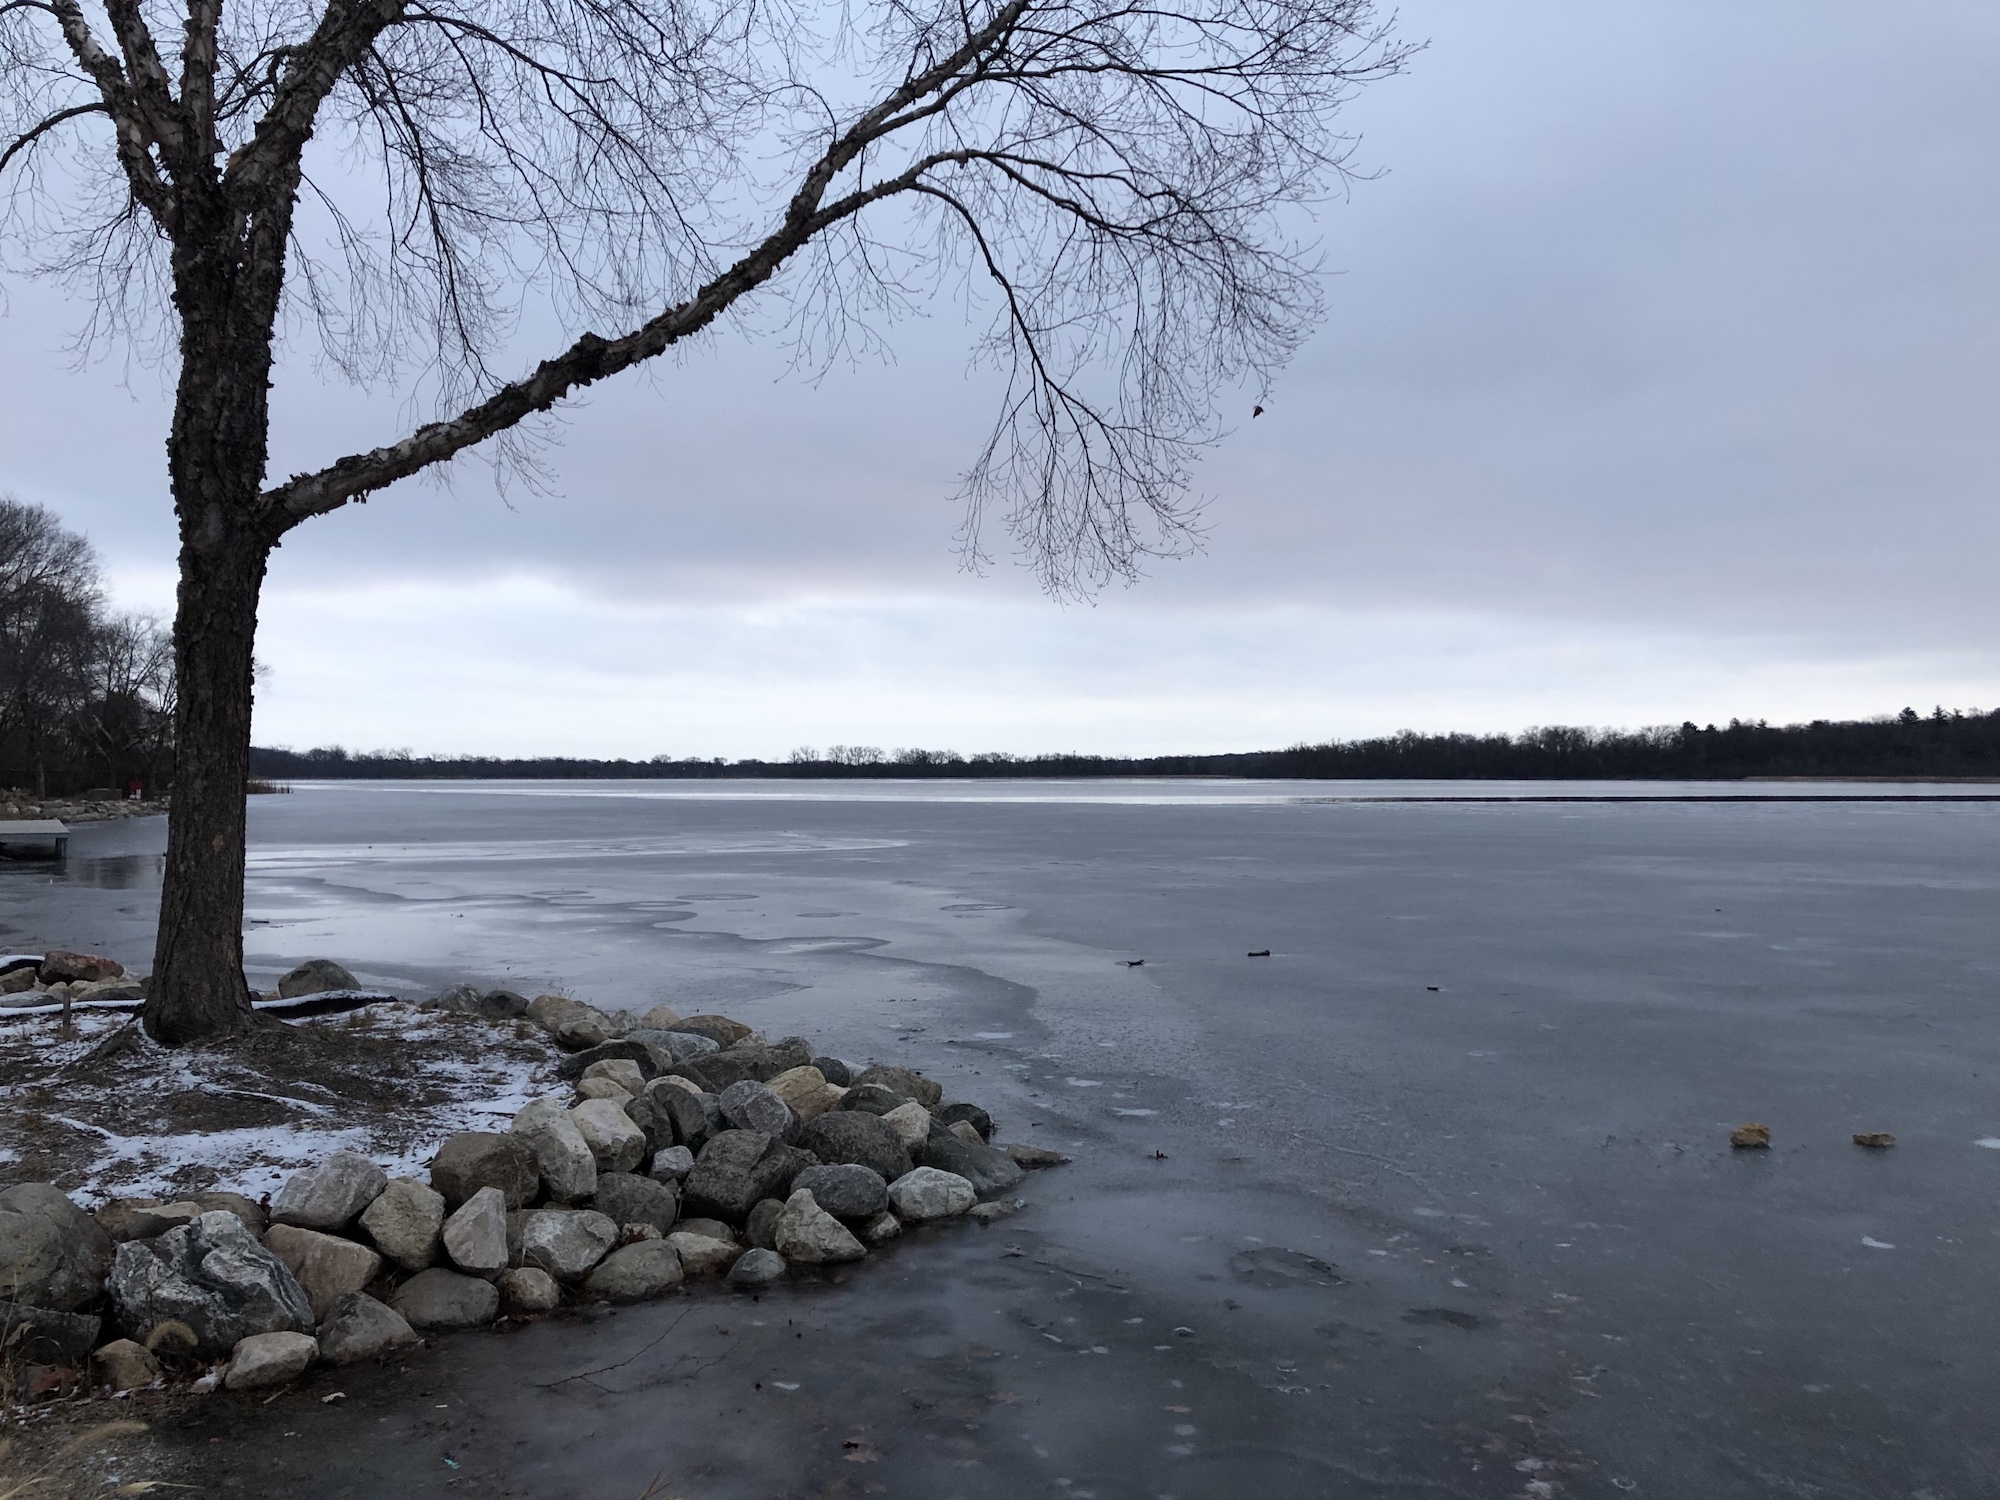 Lake Wingra on December 4, 2018.